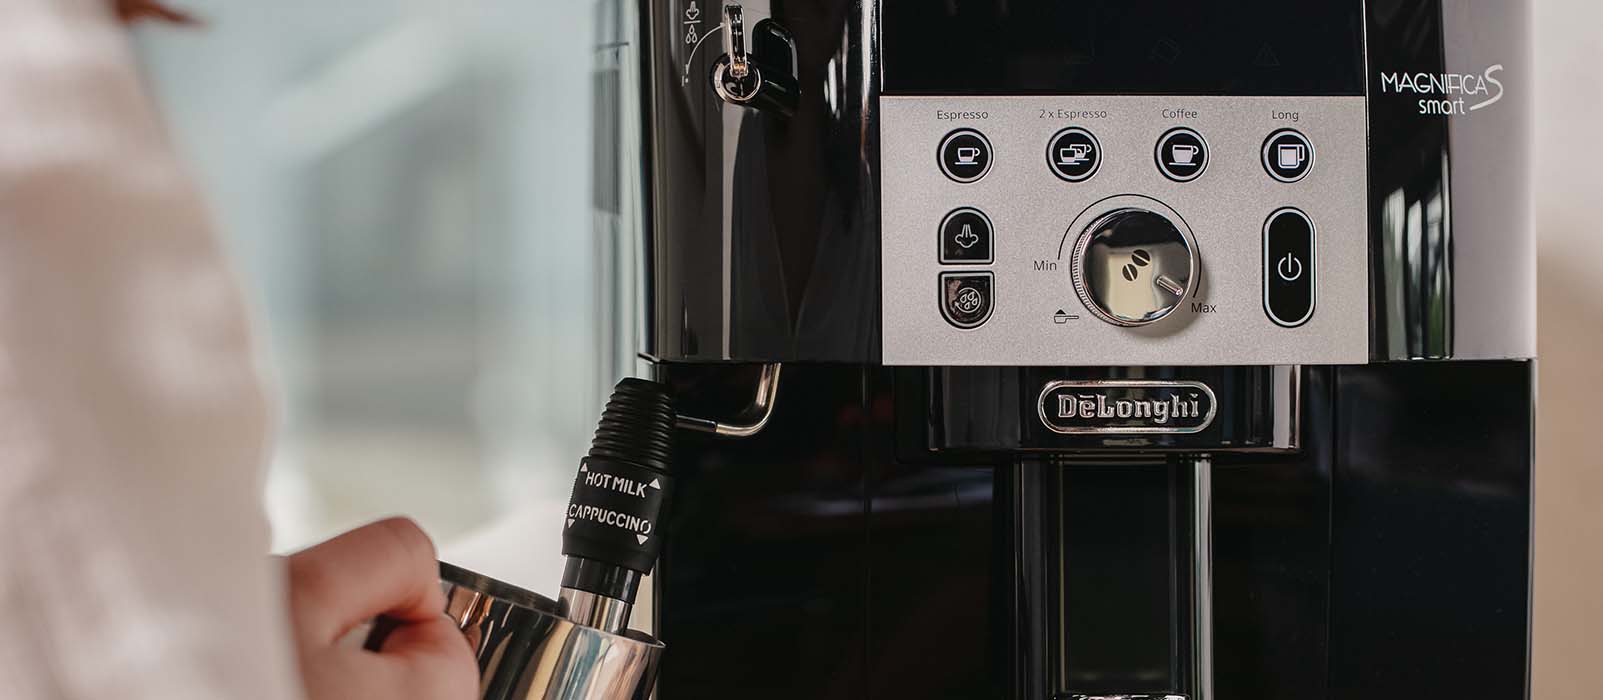 ☕ Comment détartrer ma machine à café Delonghi ? 